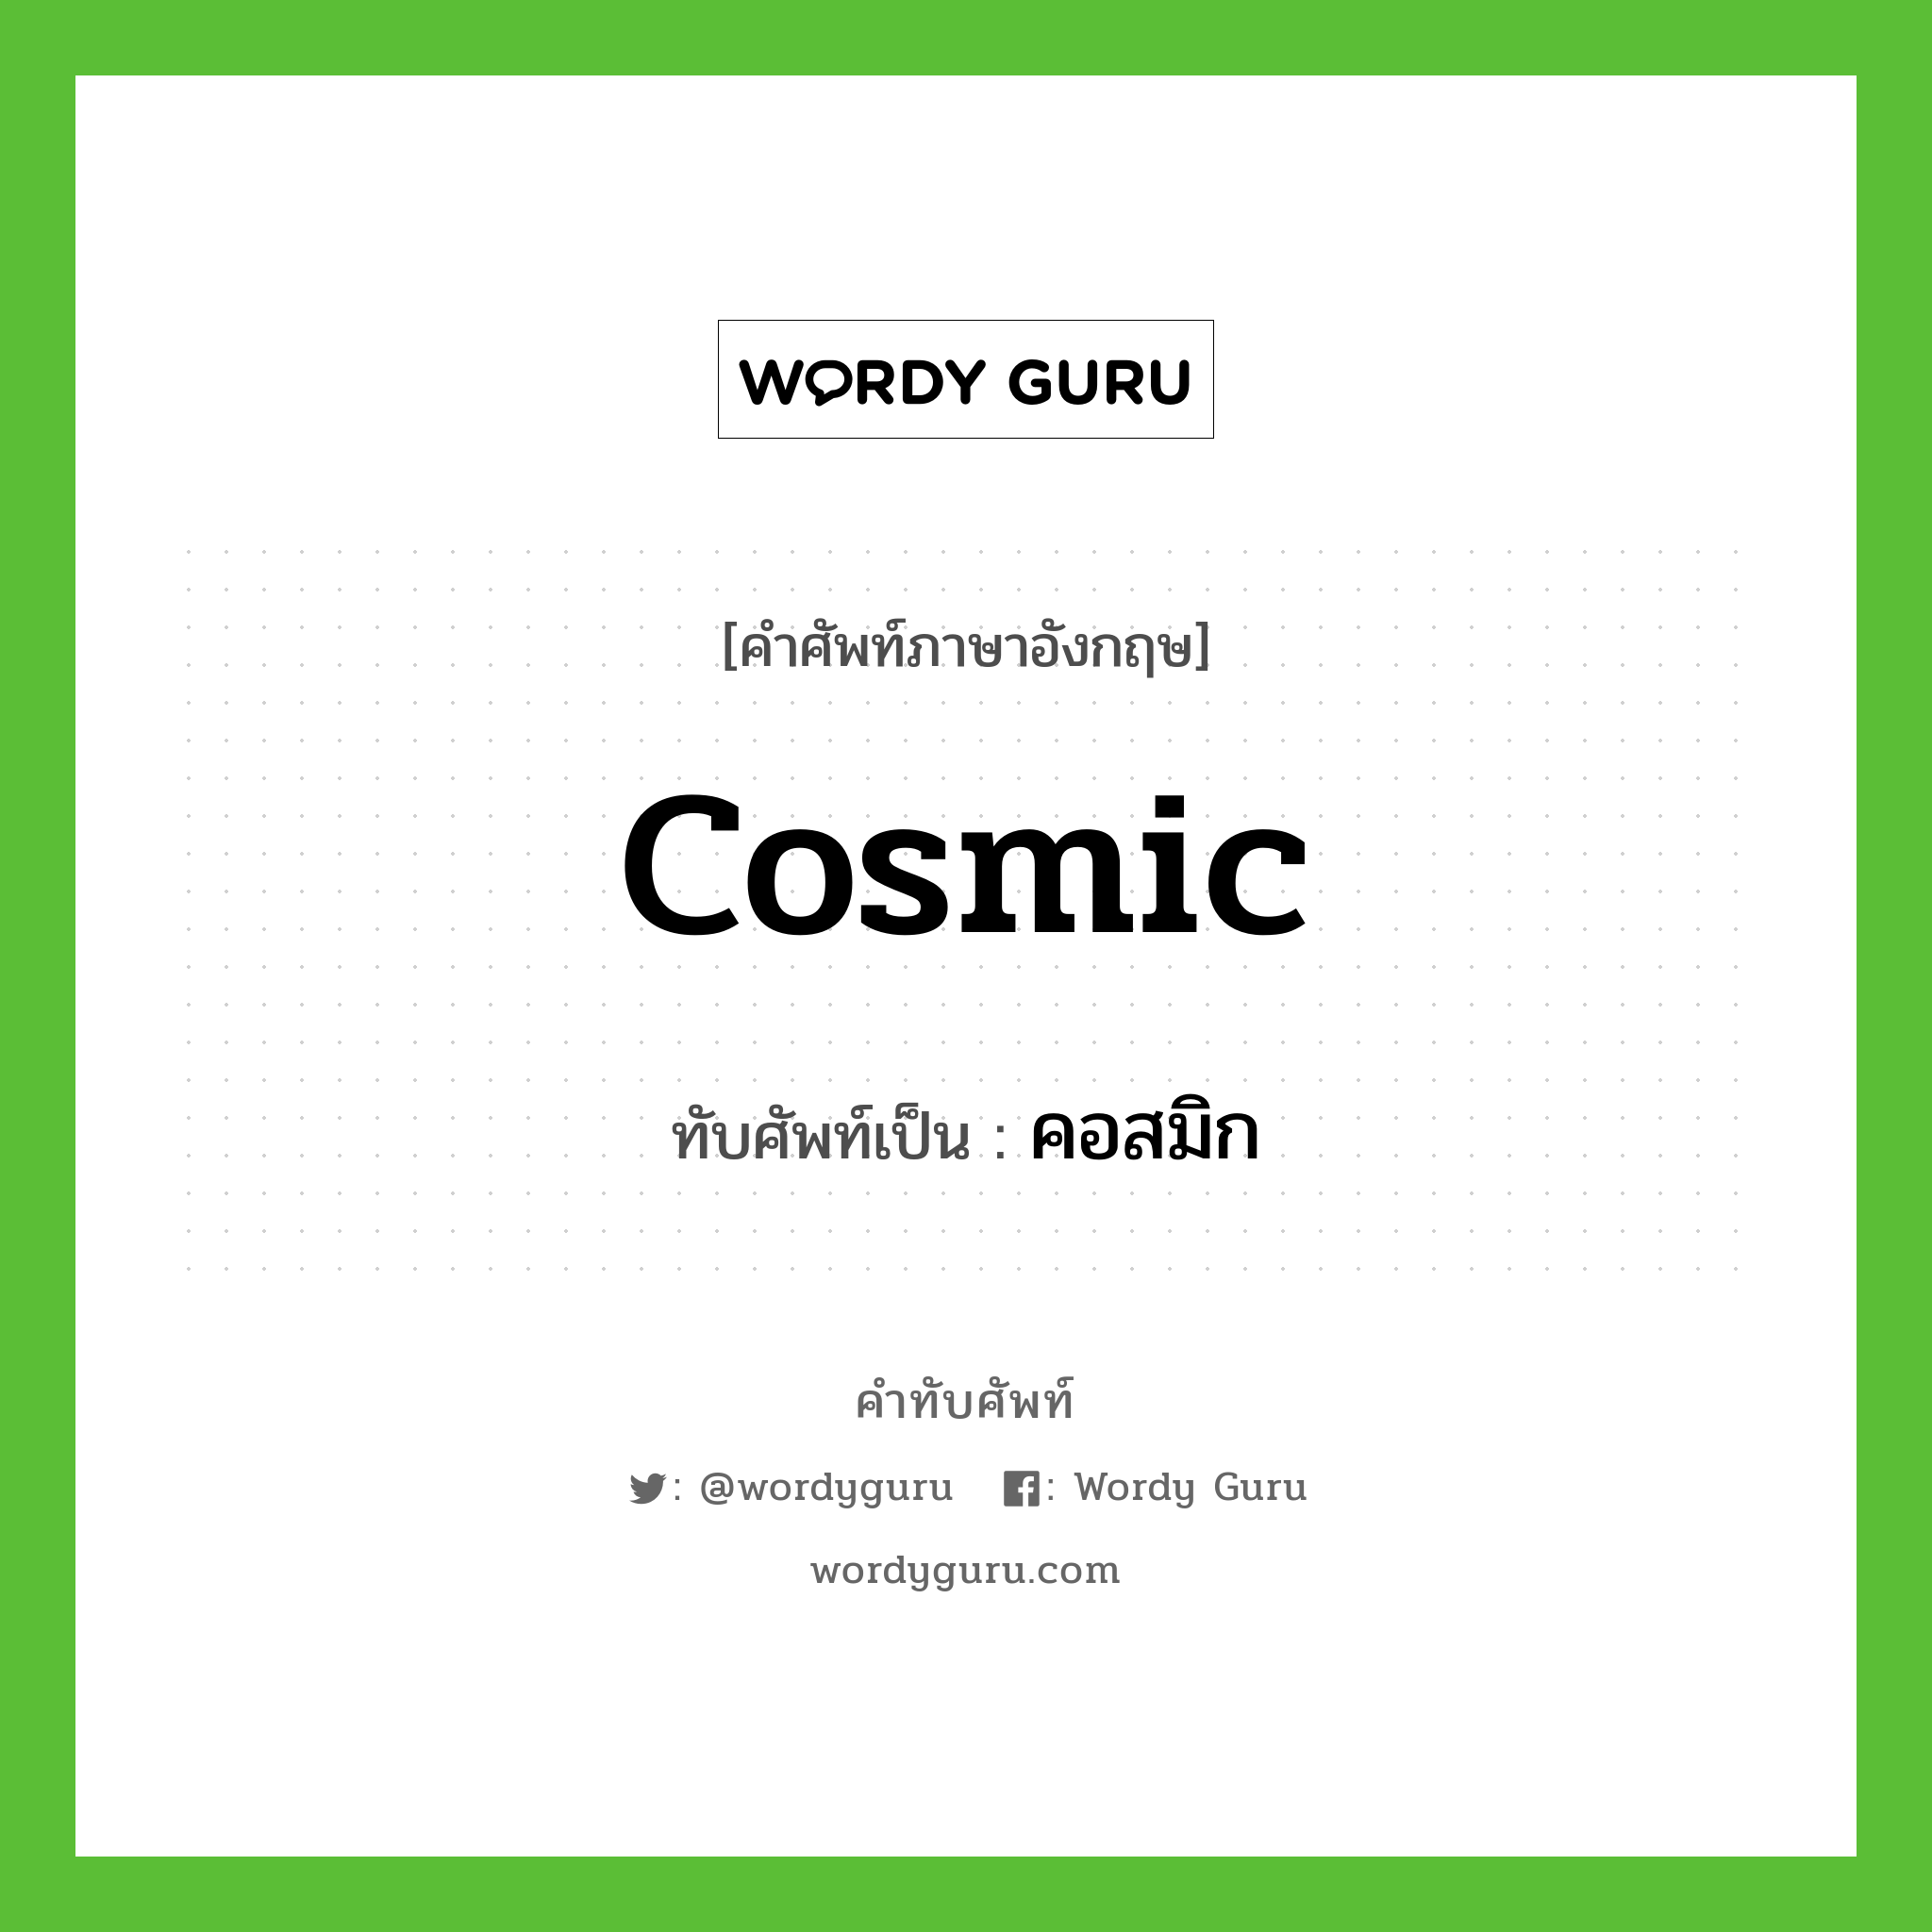 cosmic เขียนเป็นคำไทยว่าอะไร?, คำศัพท์ภาษาอังกฤษ cosmic ทับศัพท์เป็น คอสมิก